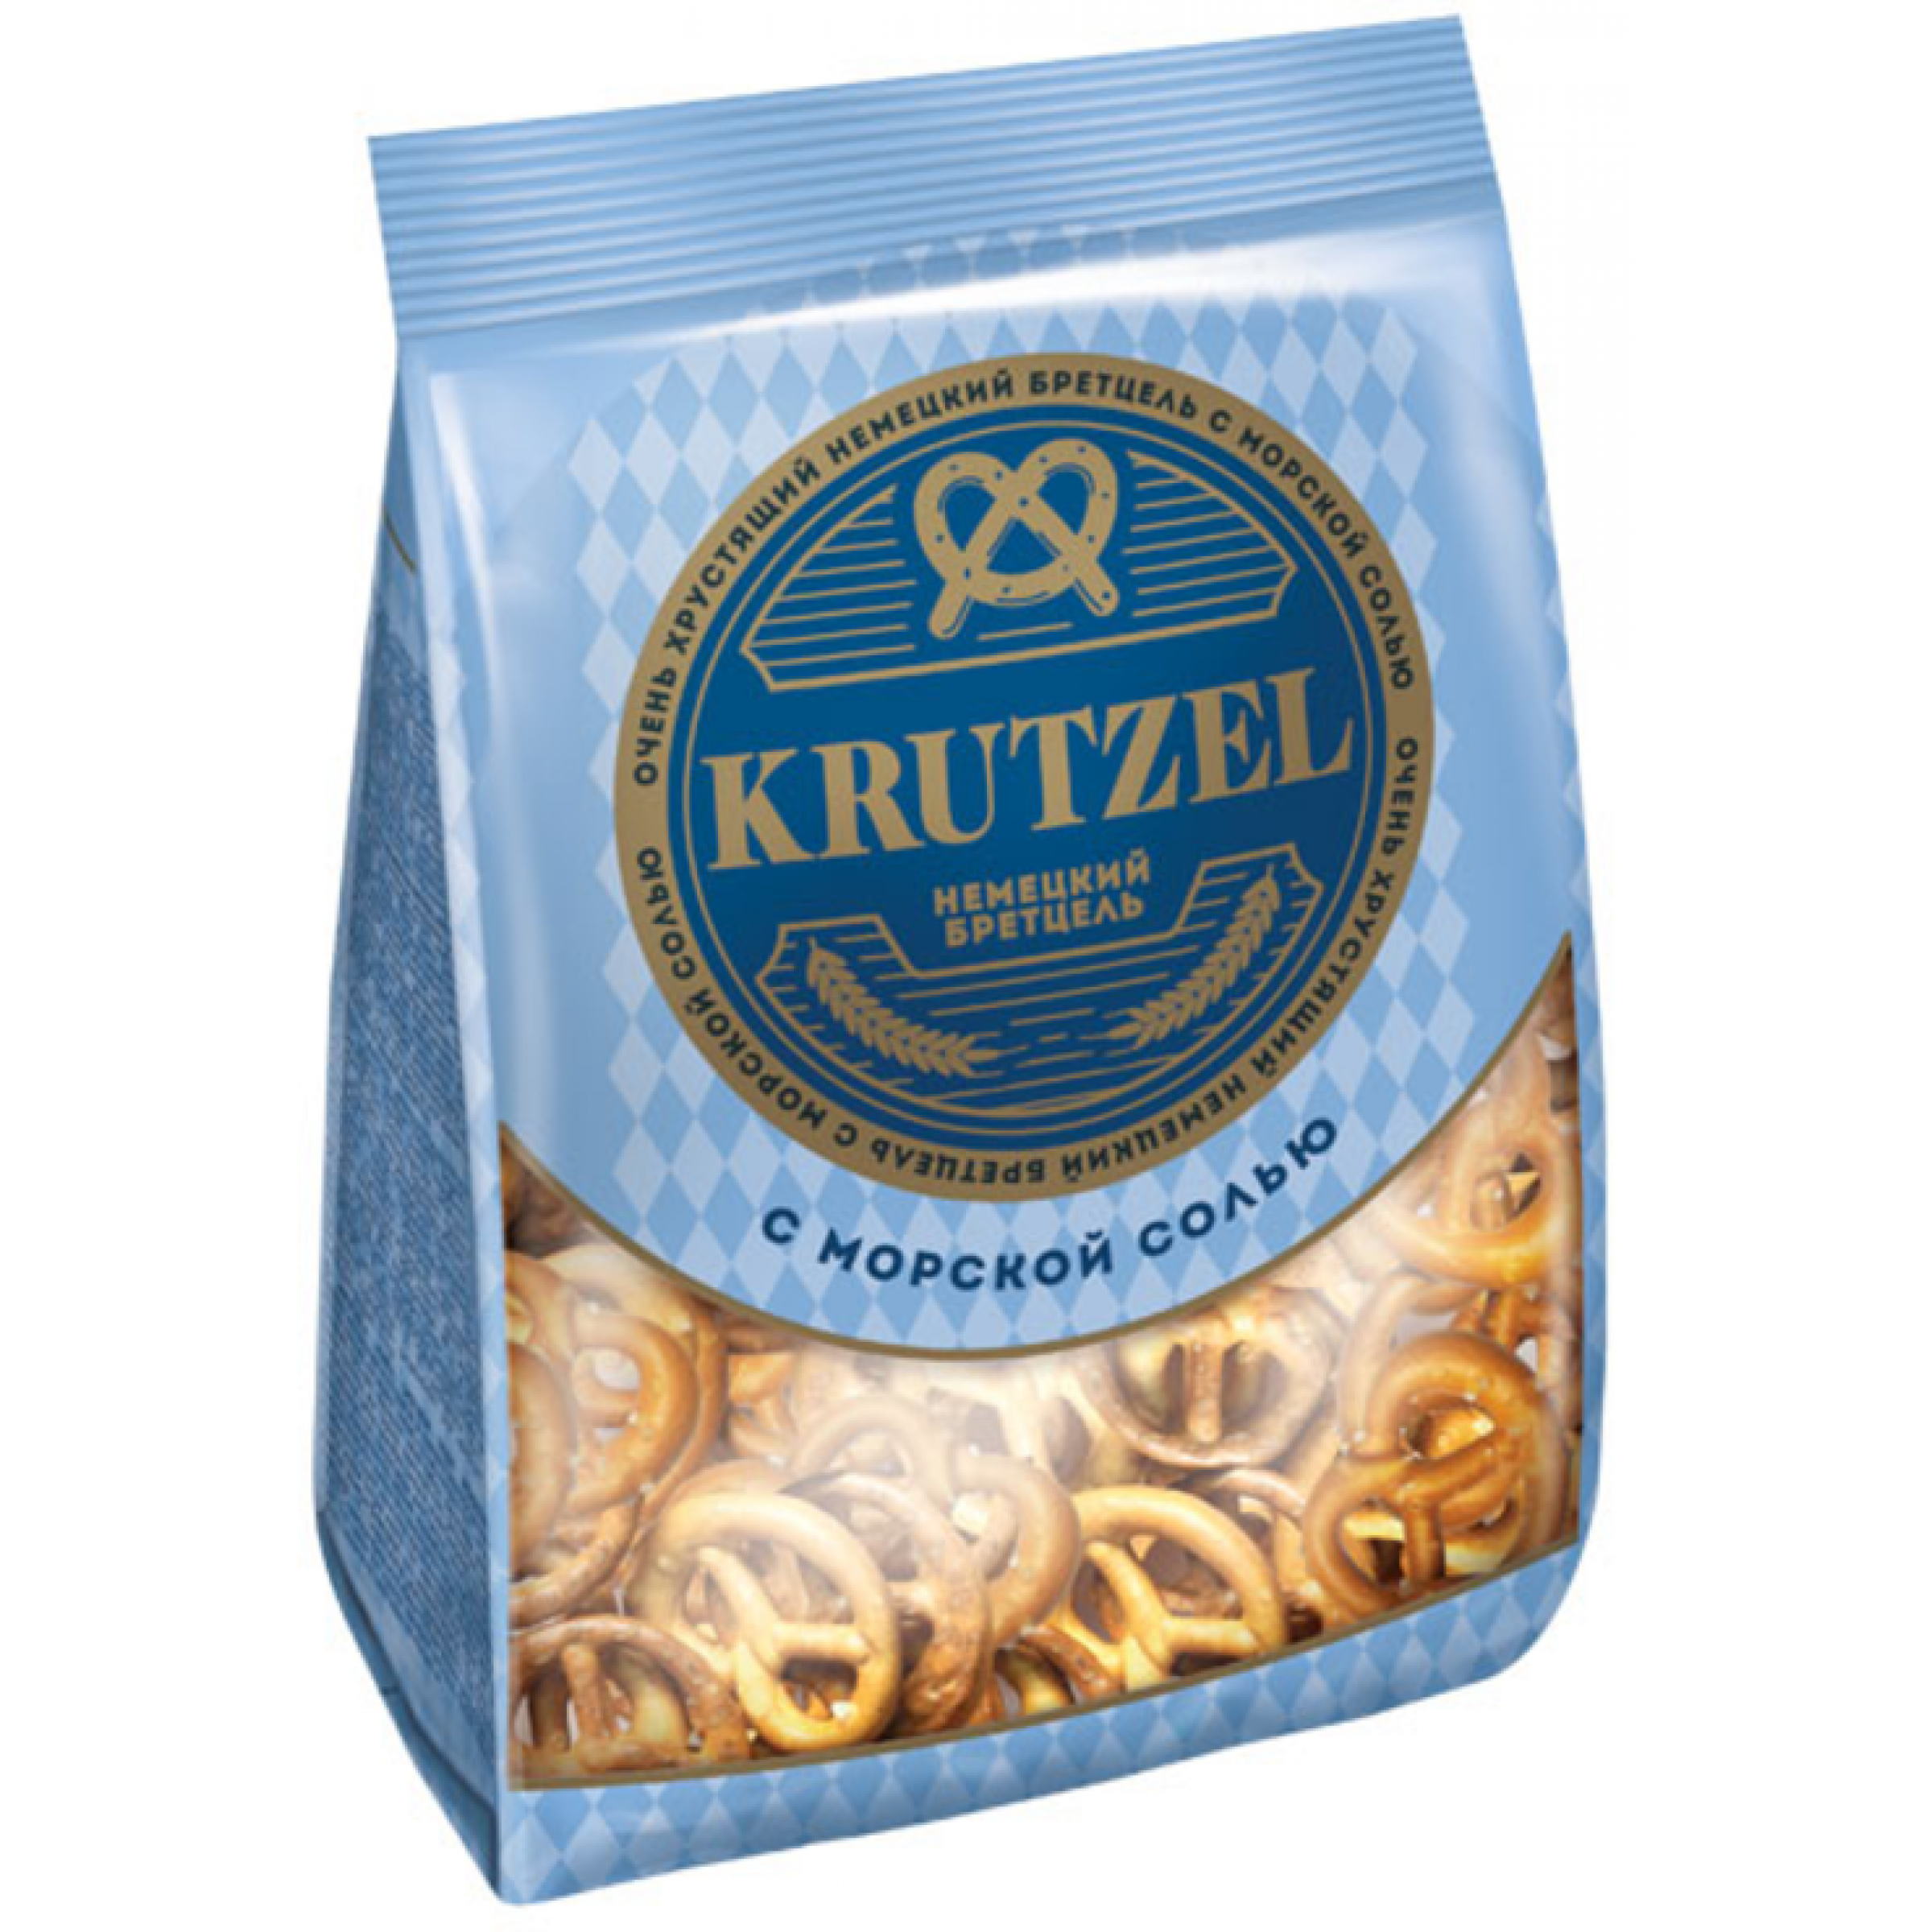 Крендельки Krutzel Бретцель с солью 250 г